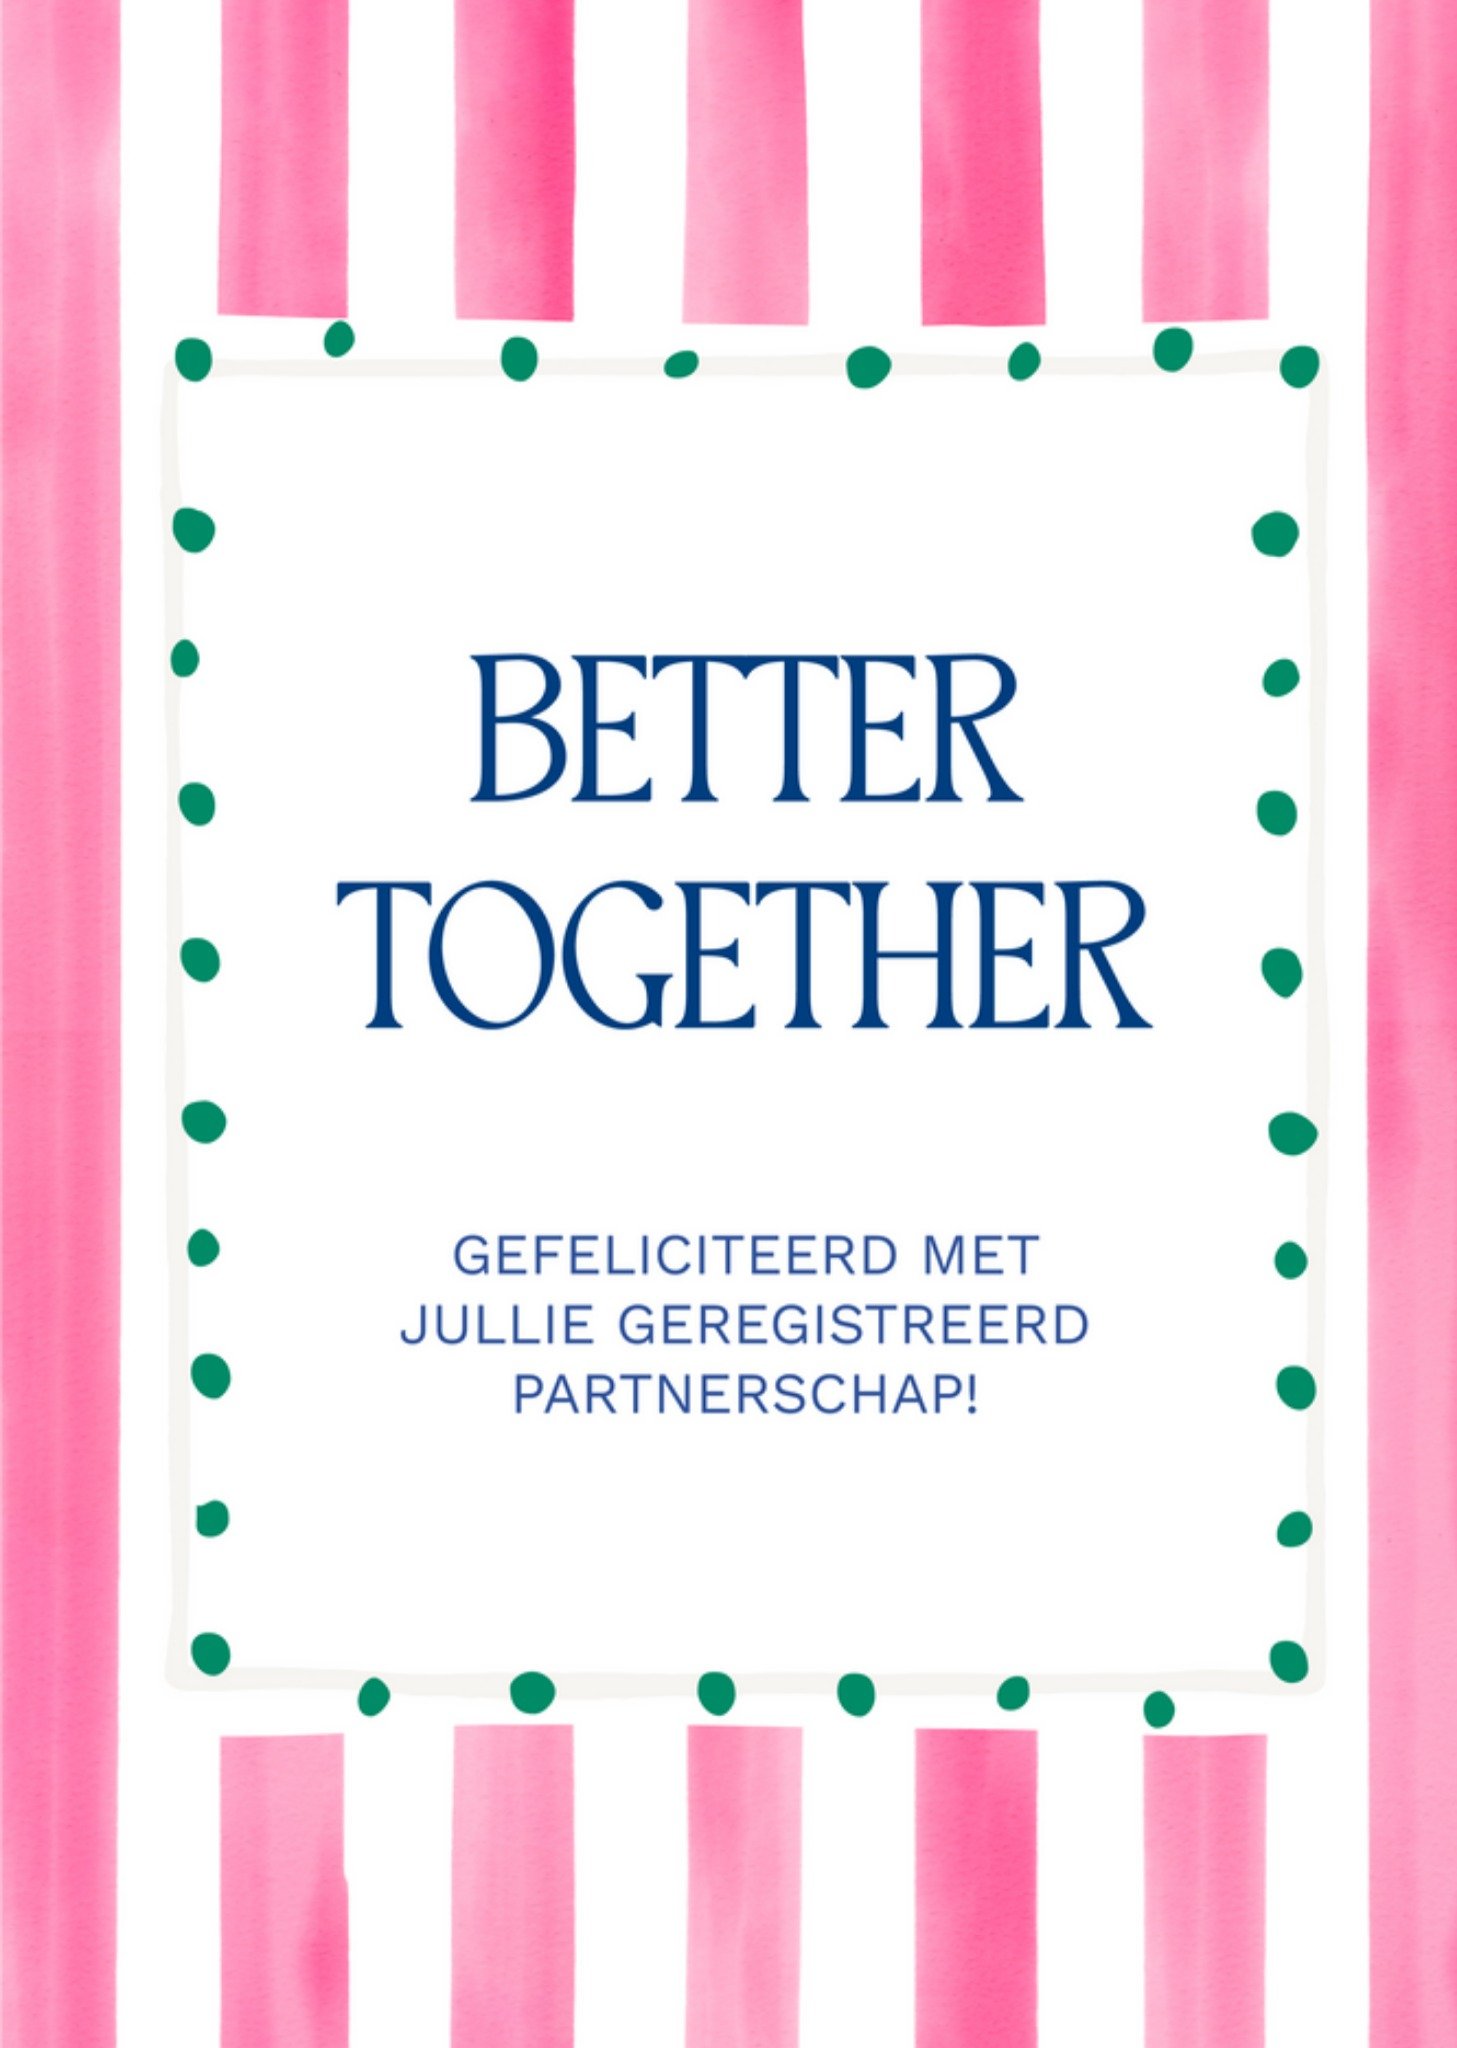 Huwelijkskaart - Geregistreerd Partnerschap - Better together